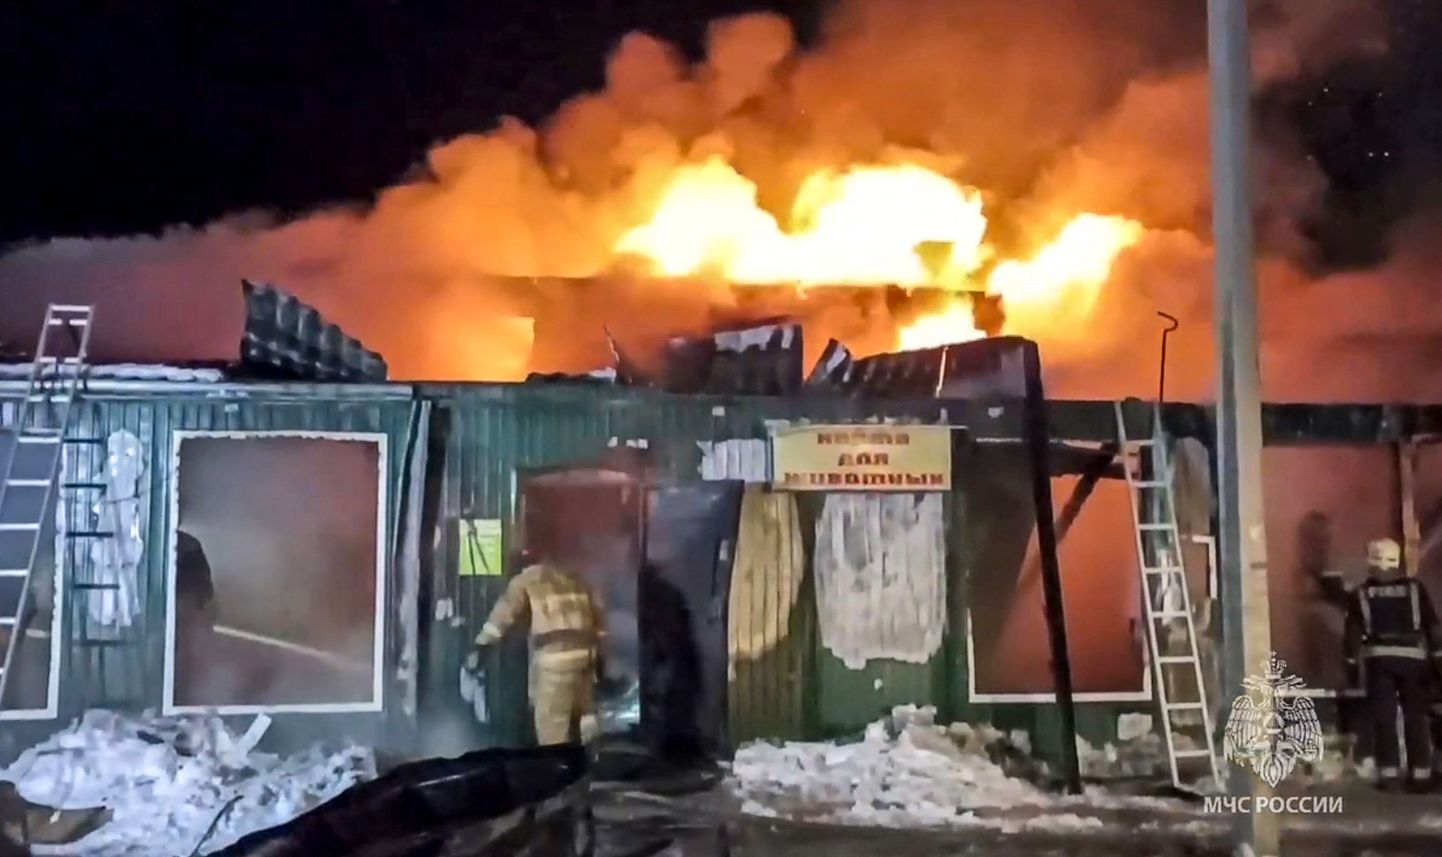 Siberis Kemerovos lahvatas öösel põleng eramajas, kus peeti ebaseaduslikult vanadekodu.